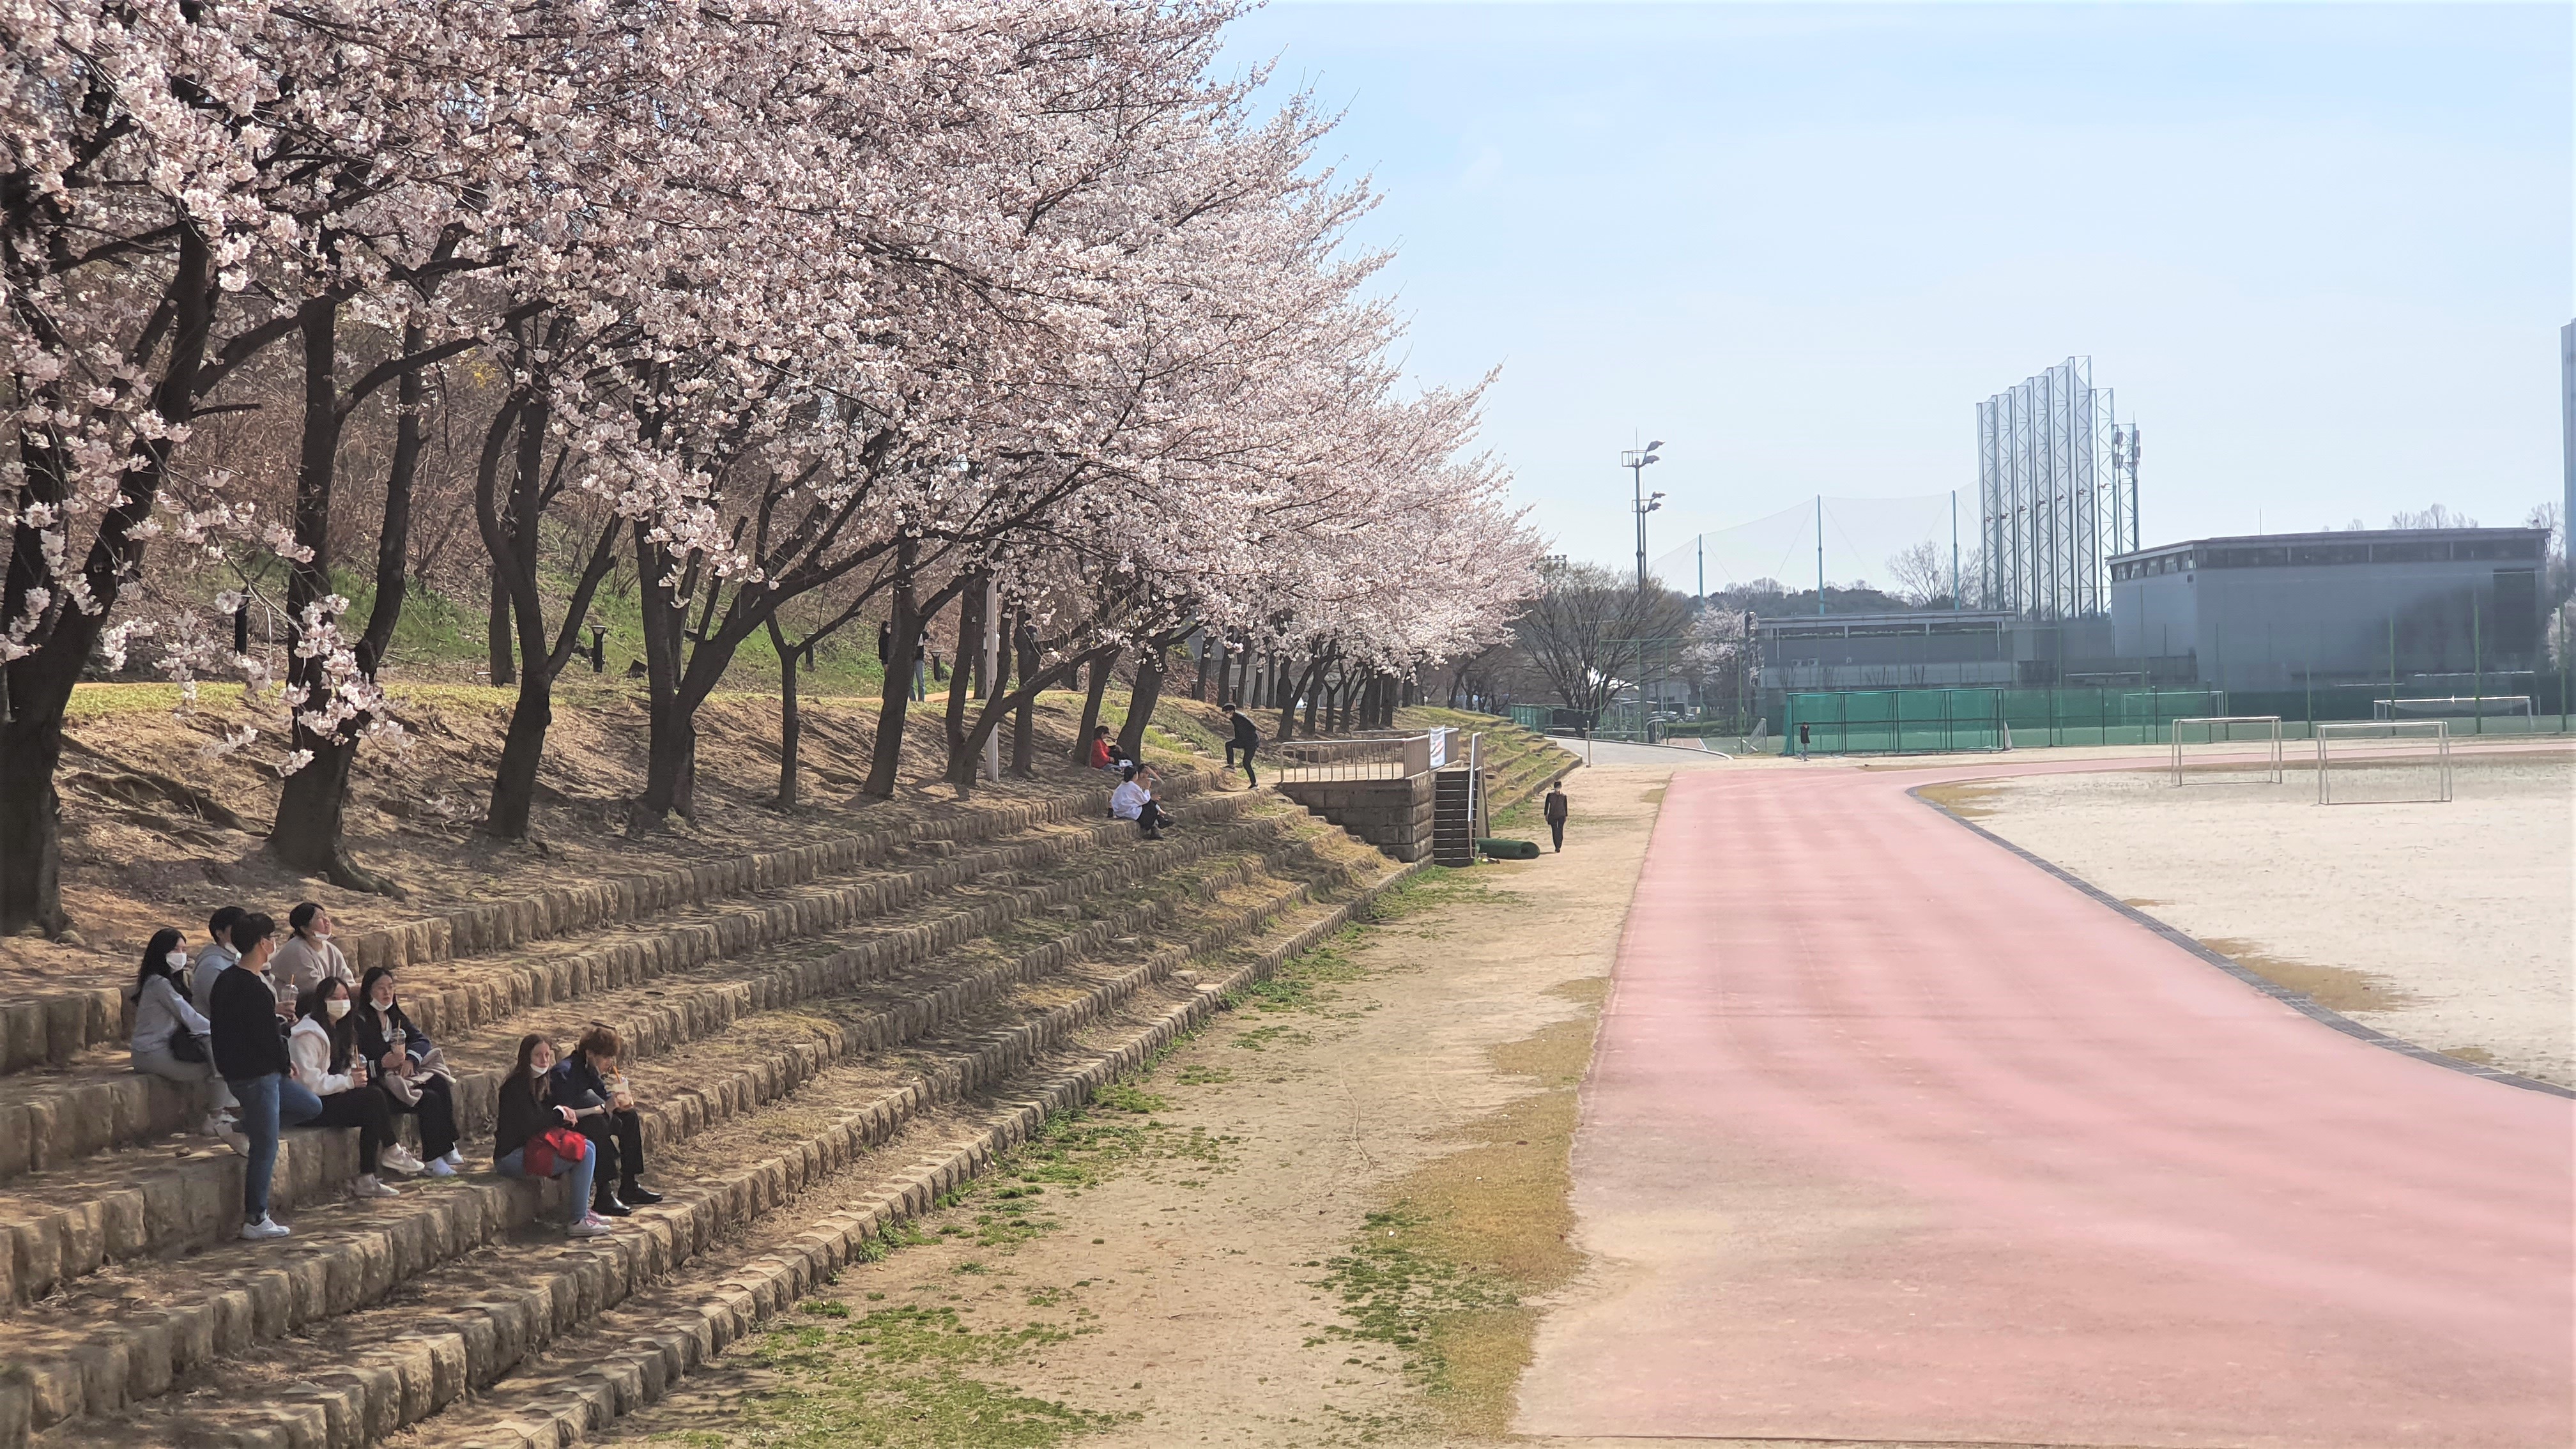 성균관대학교 자연과학캠퍼스 대운동장에 핀 벚꽃